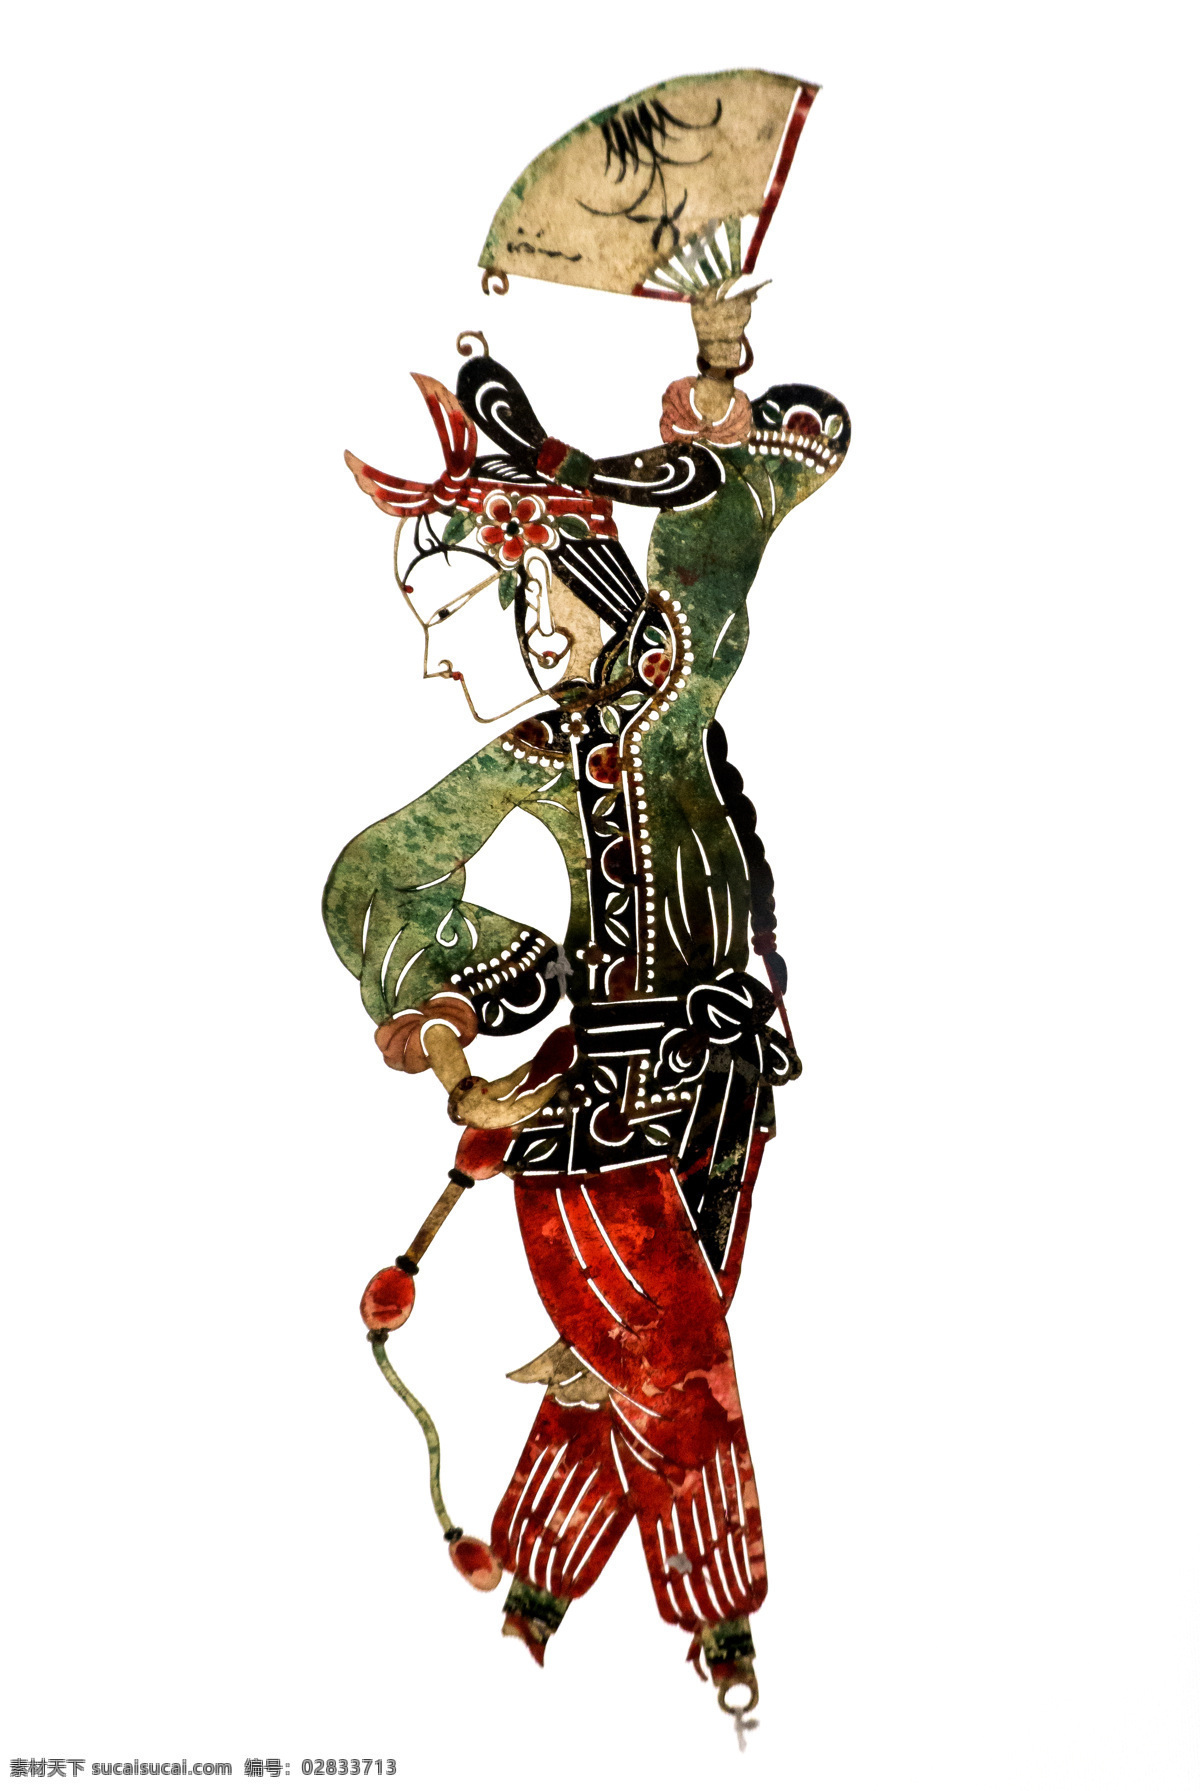 皮影戏人物 皮影 传统 文化 文化遗产 民族 戏曲 古人 人物 中国风 国粹 影子戏 驴皮影 戏剧艺术 文化艺术 传统文化